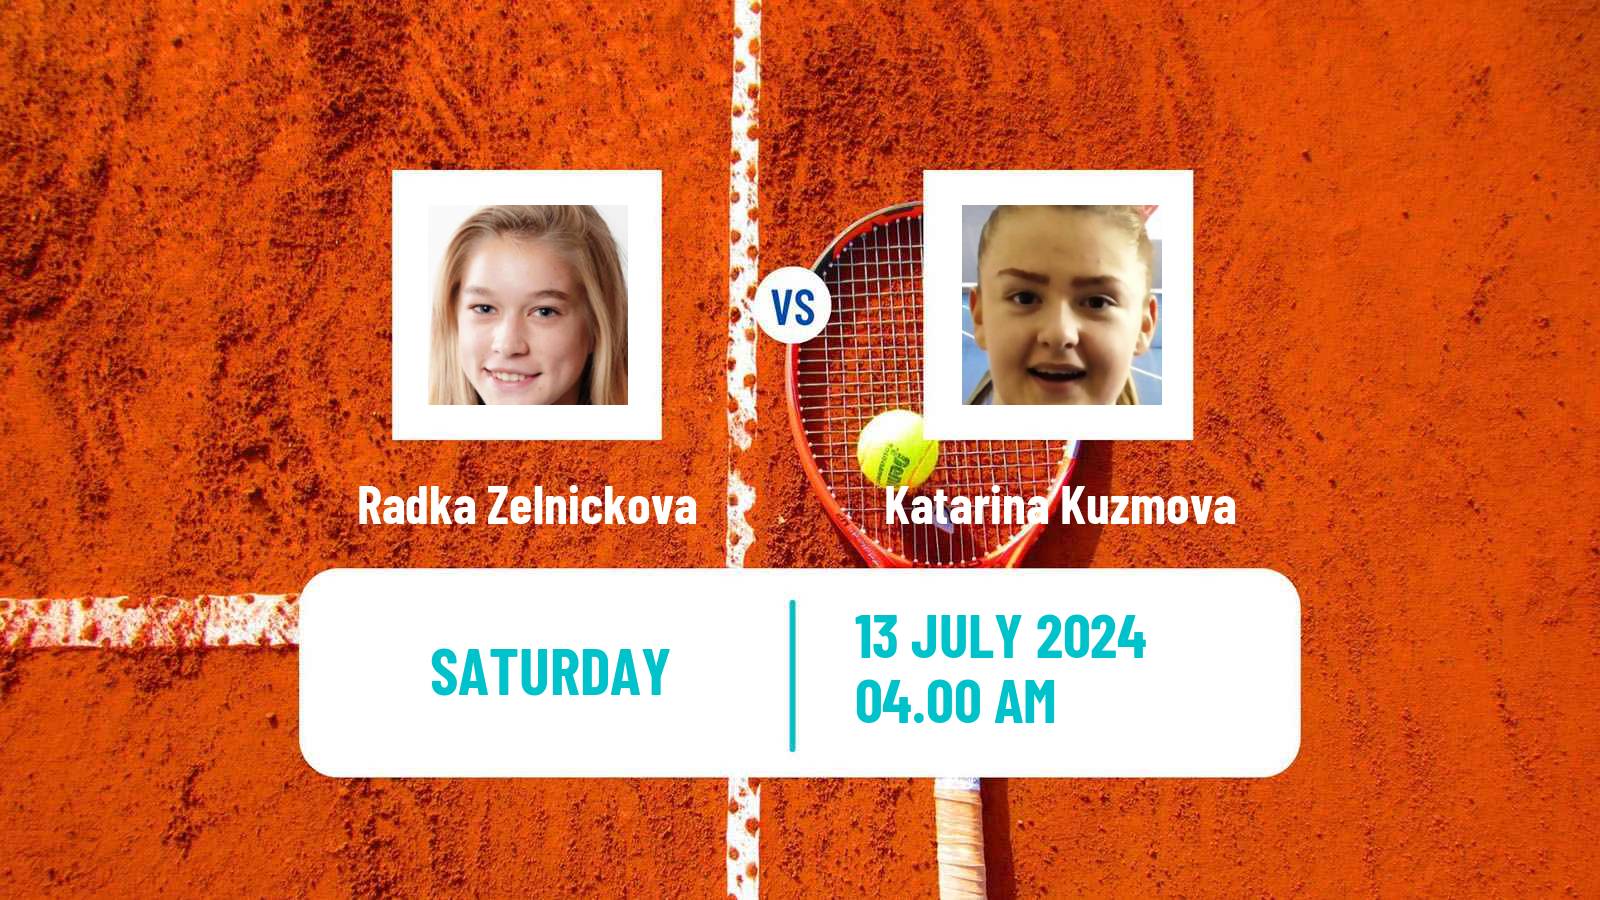 Tennis ITF W15 Grodzisk Mazowiecki Women Radka Zelnickova - Katarina Kuzmova